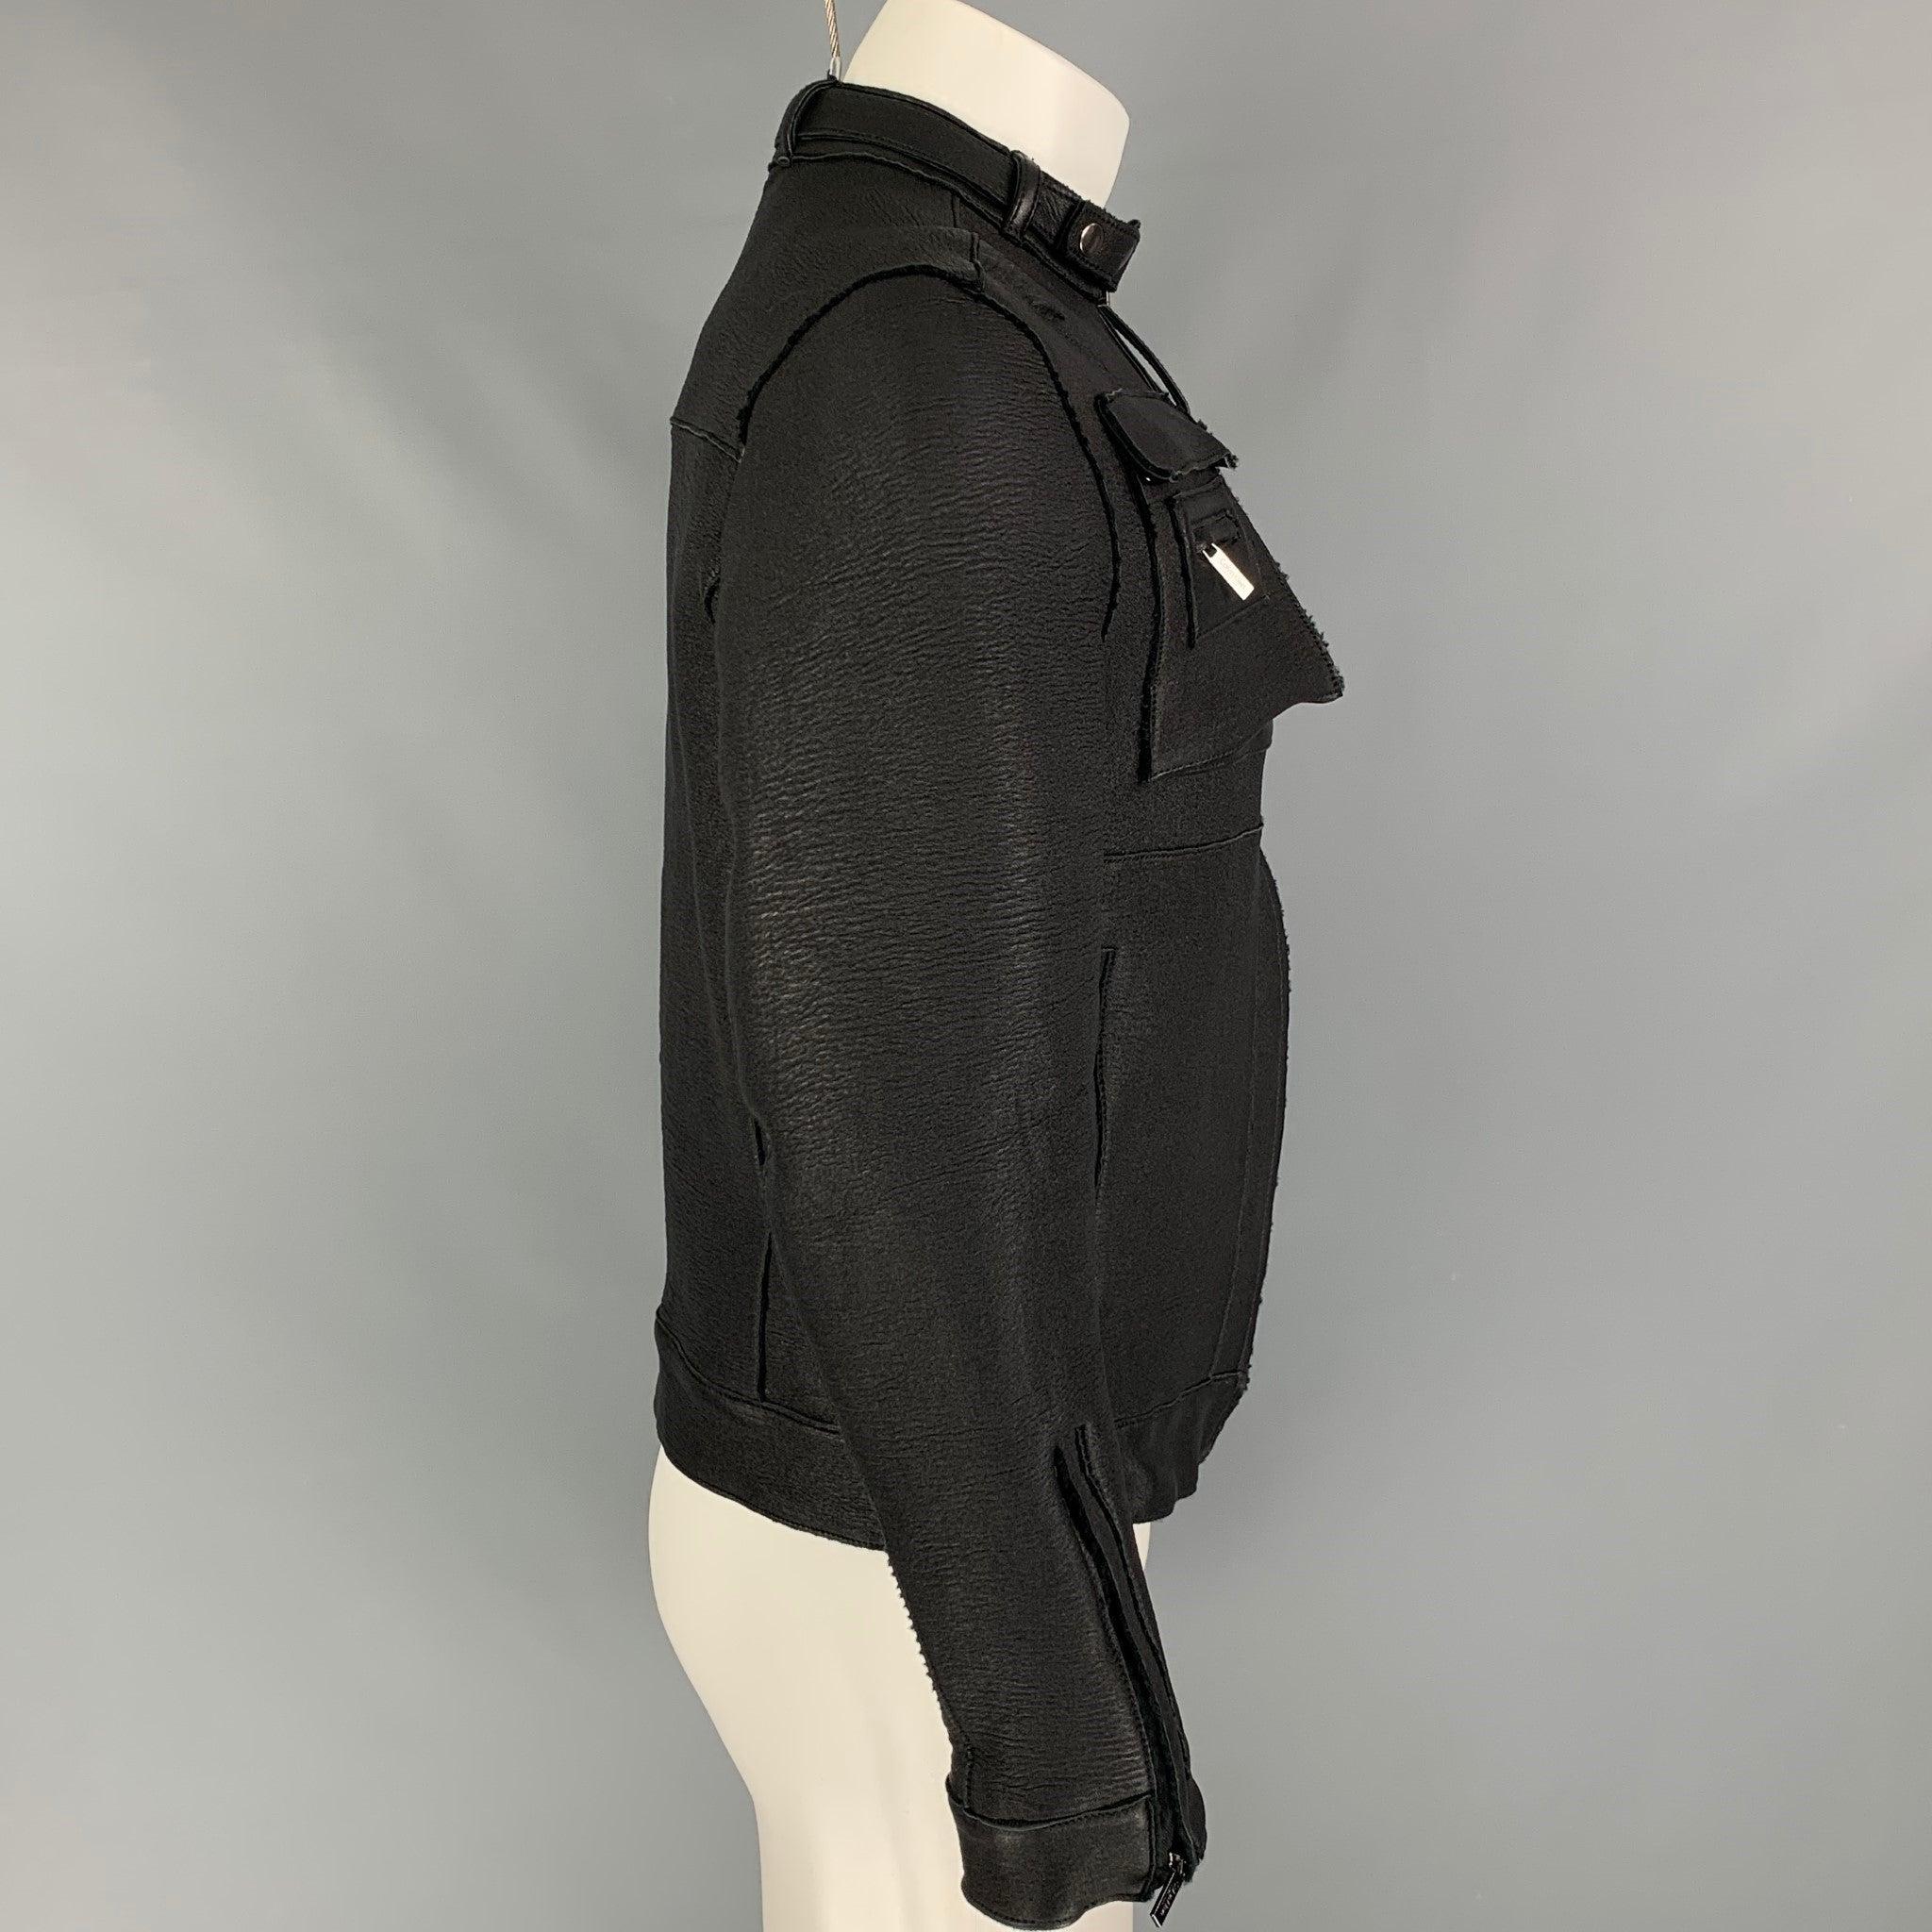 La veste CALVIN KLEIN COLLECTION est en cuir noir avec une doublure intégrale. Elle présente un style moto, plusieurs poches sur le devant, une sangle de col amovible et une fermeture à glissière intégrale. Fabriquées en Italie.
Très bien
Etat